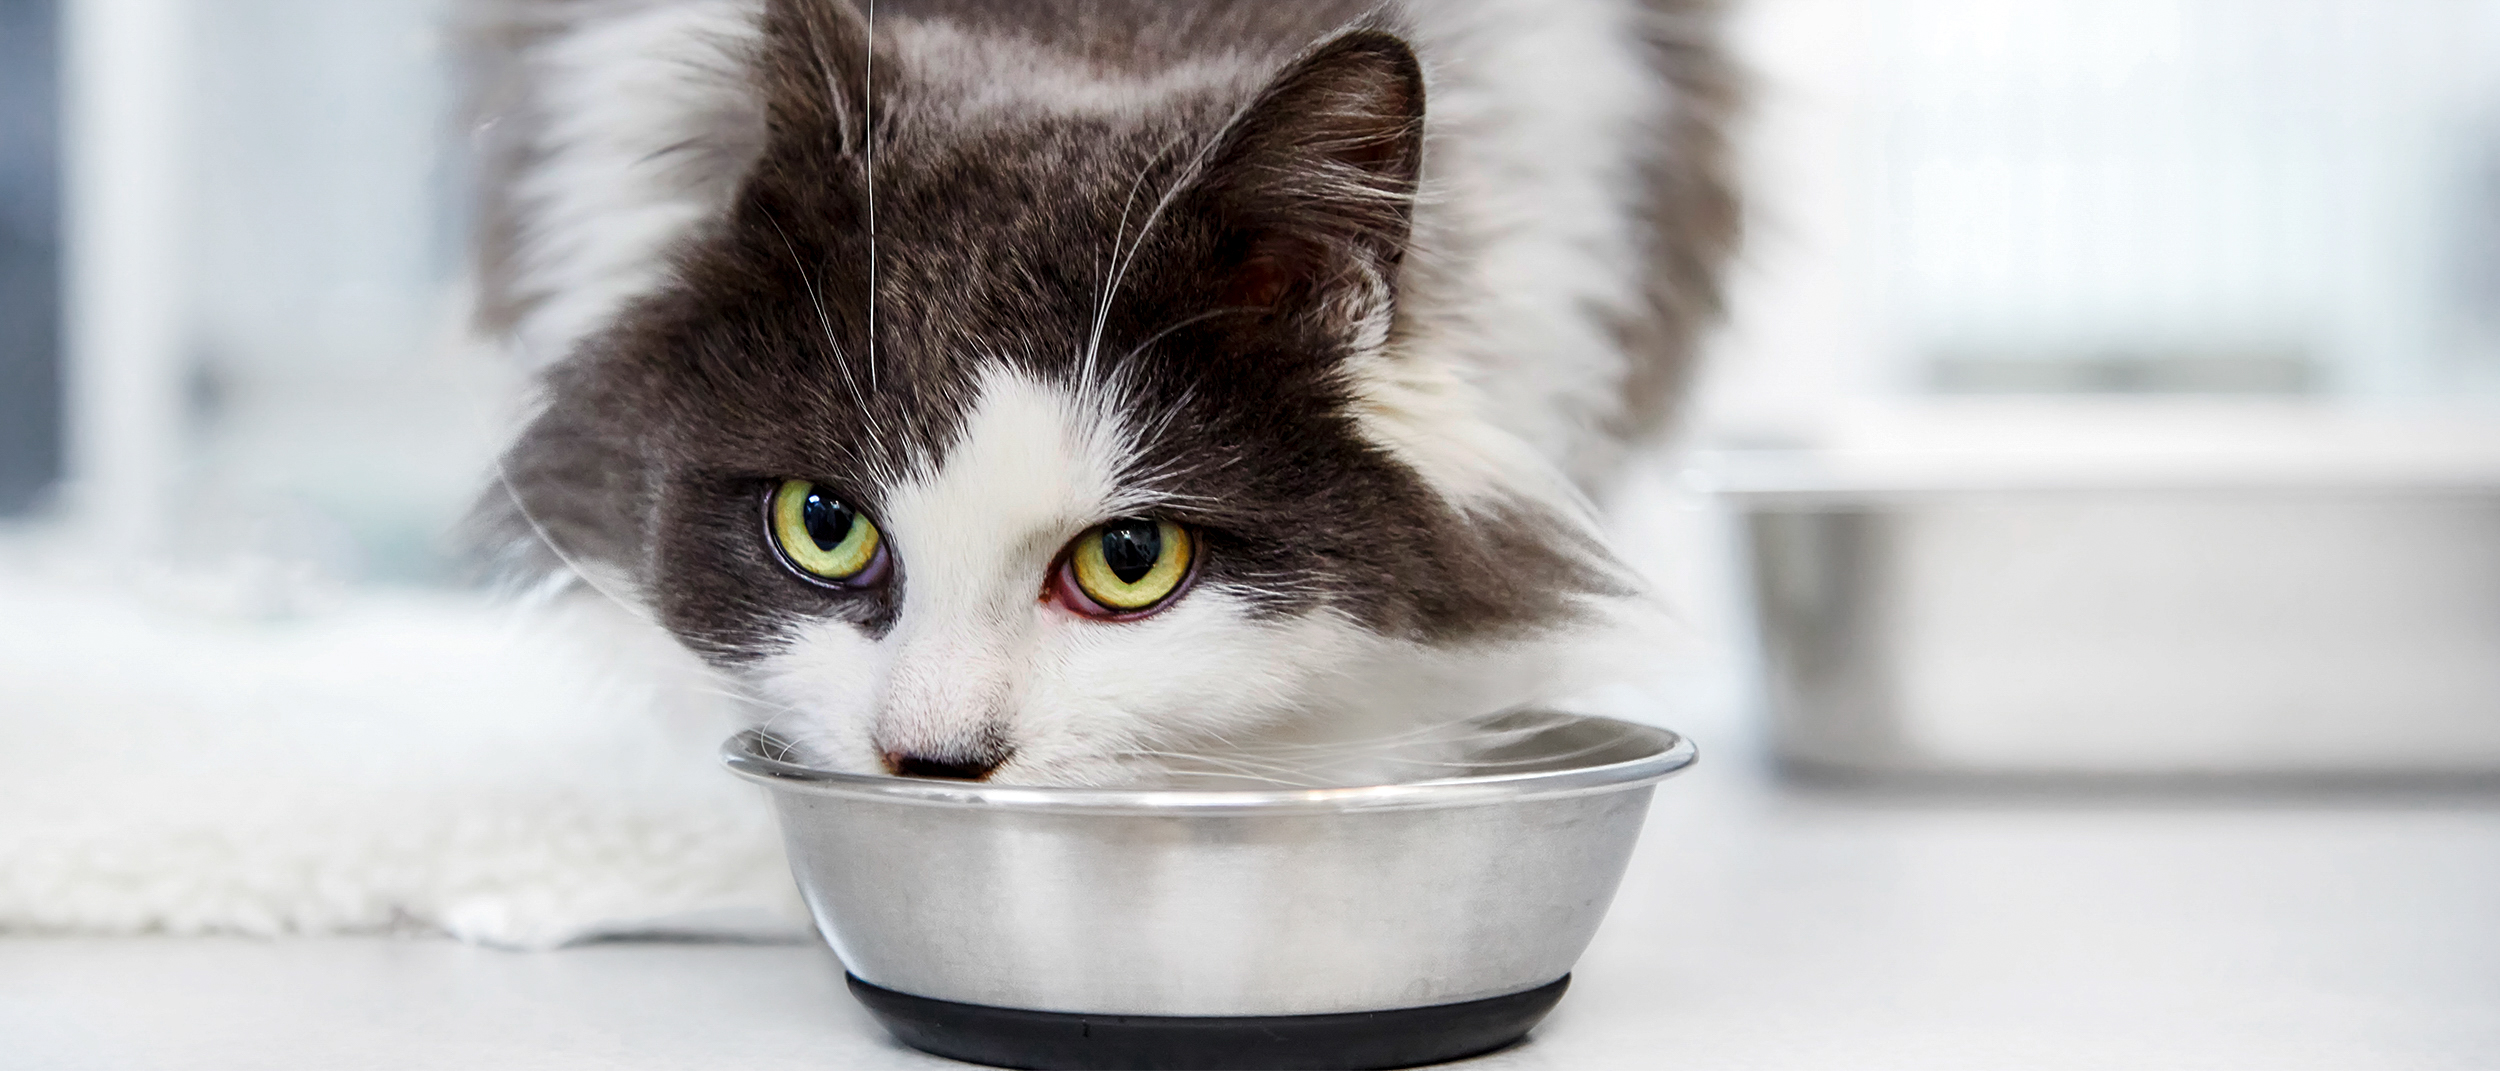 Дорослий кіт їсть зі сріблястої миски у ветеринарній клініці.